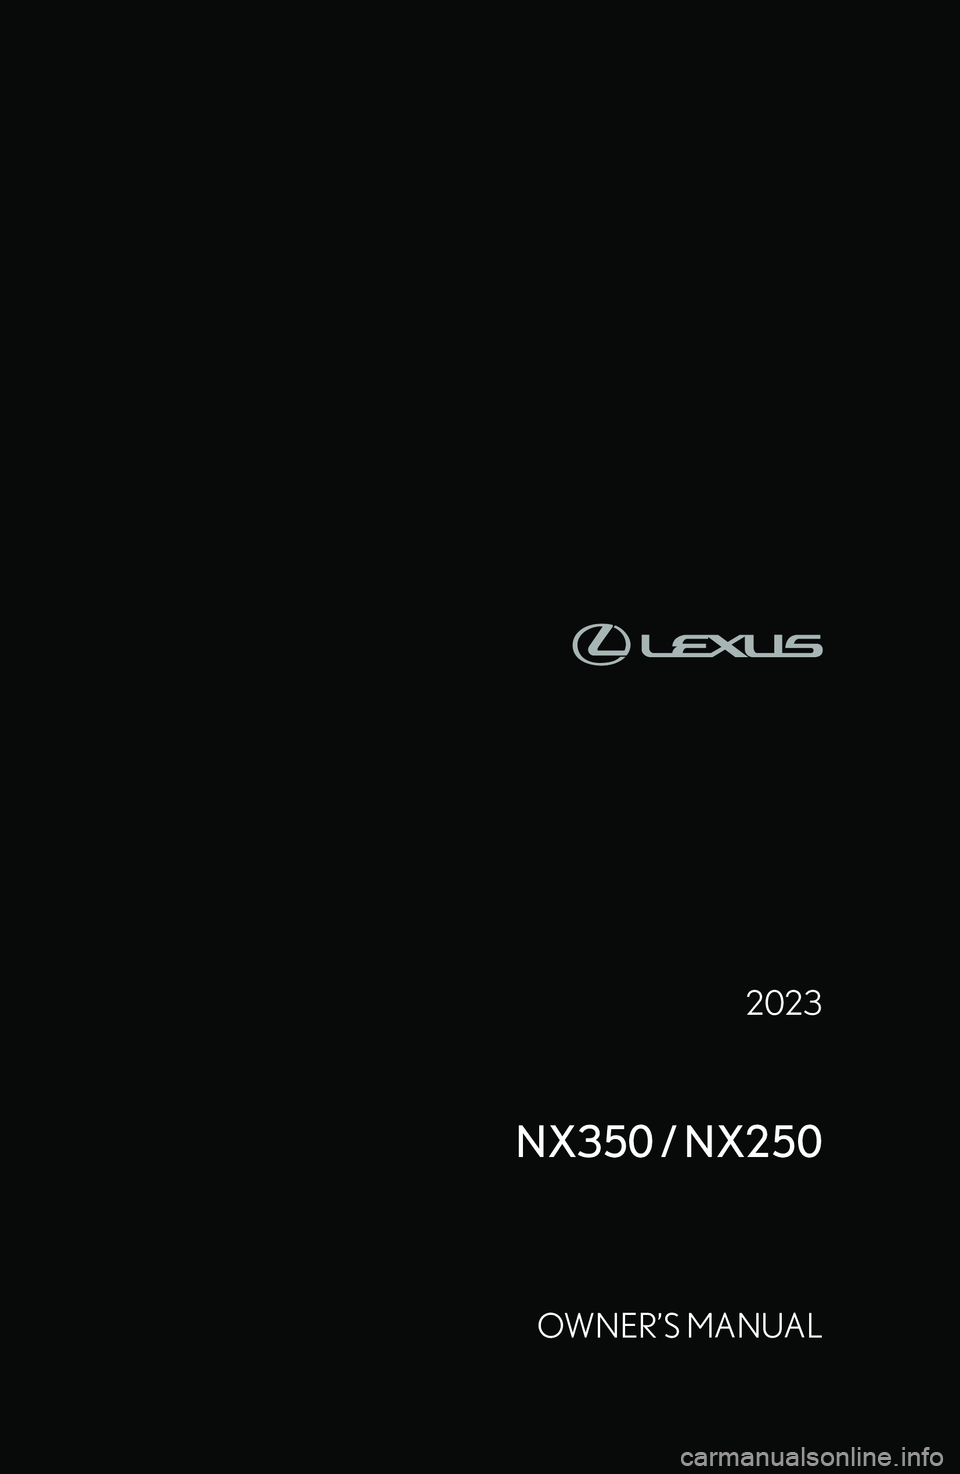 LEXUS NX250 350 2023  Owners Manual �2�0�2�3
�N�X�3�5�0��/��N�X�2�5�0
�O�W�N�E�R�
�S� �M�A�N�U�A�L  